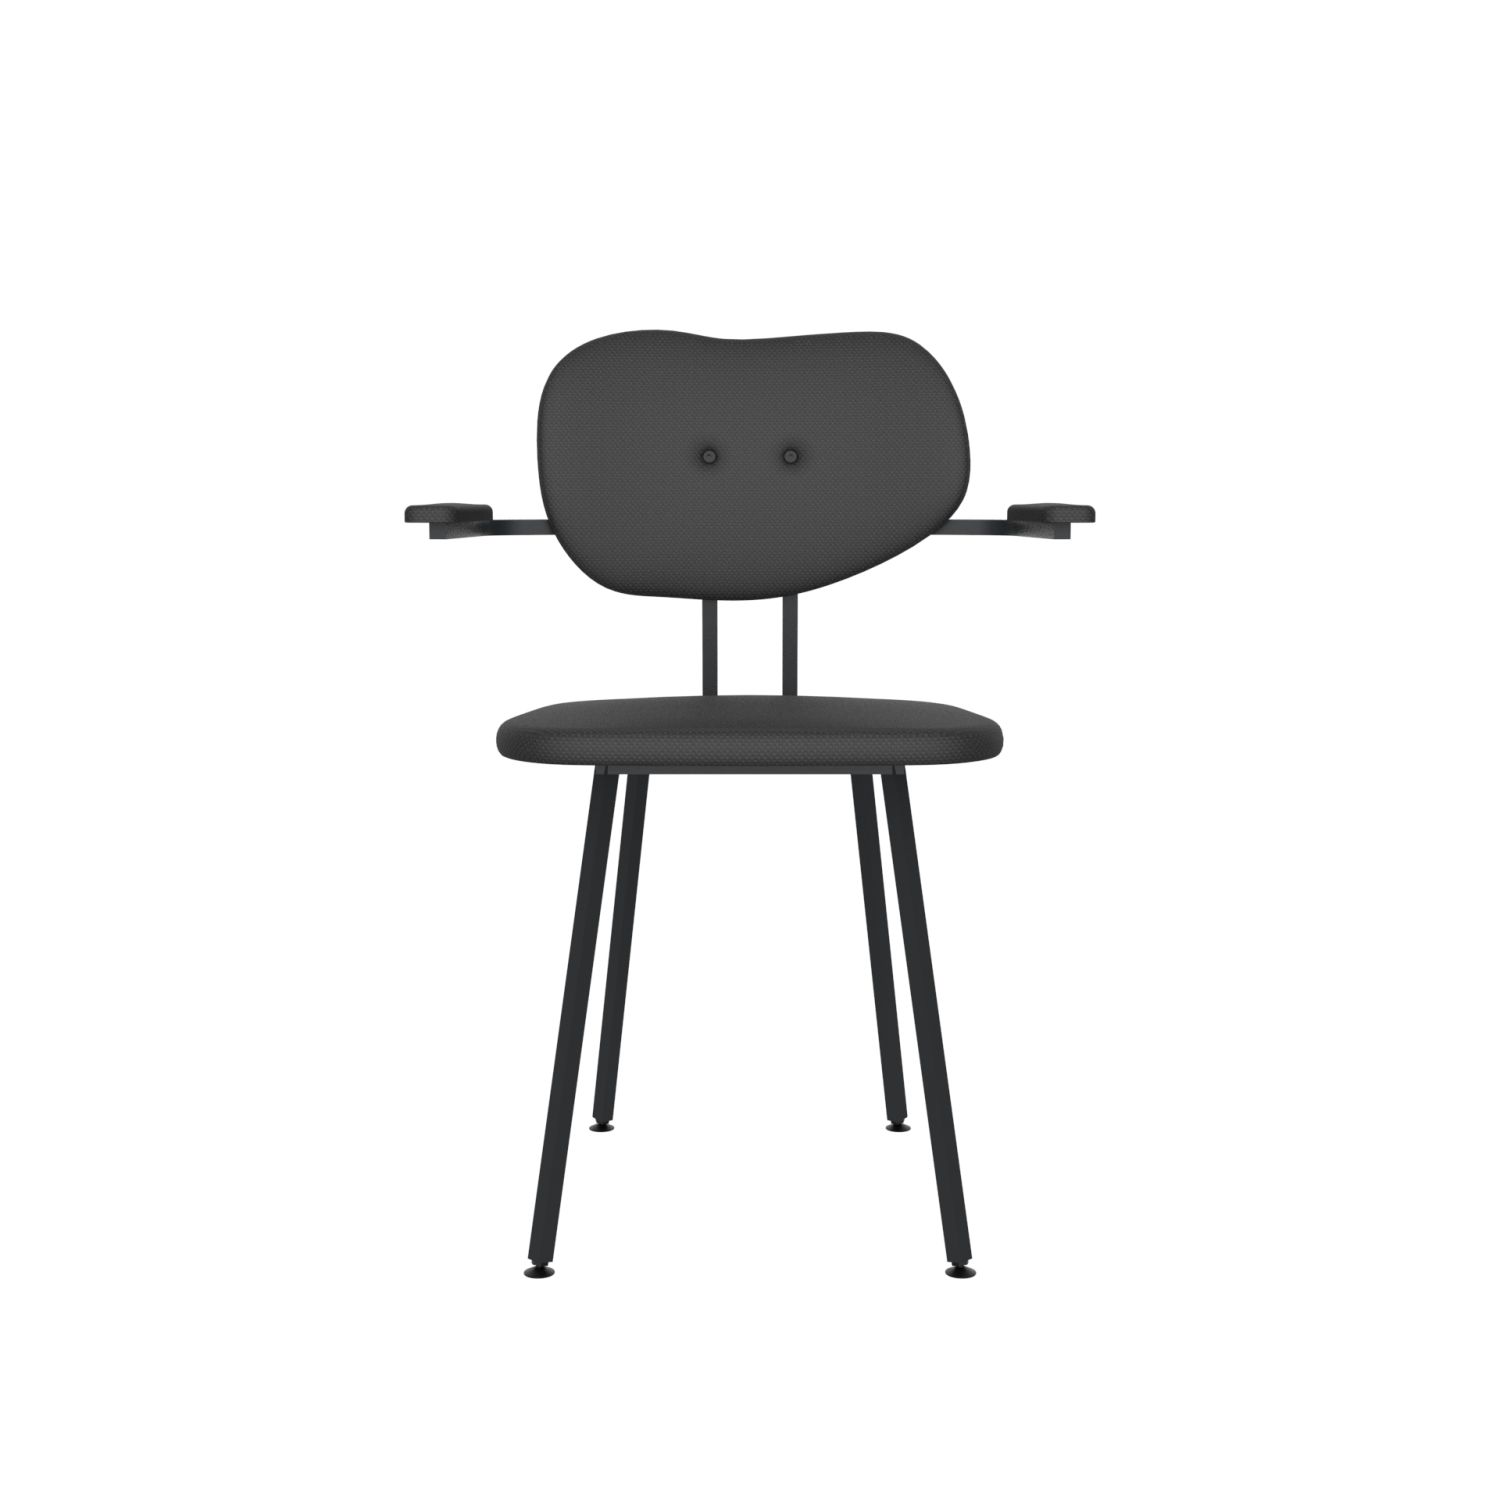 lensvelt maarten baas chair 102 not stackable with armrests backrest b havana black 090 black ral9005 hard leg ends